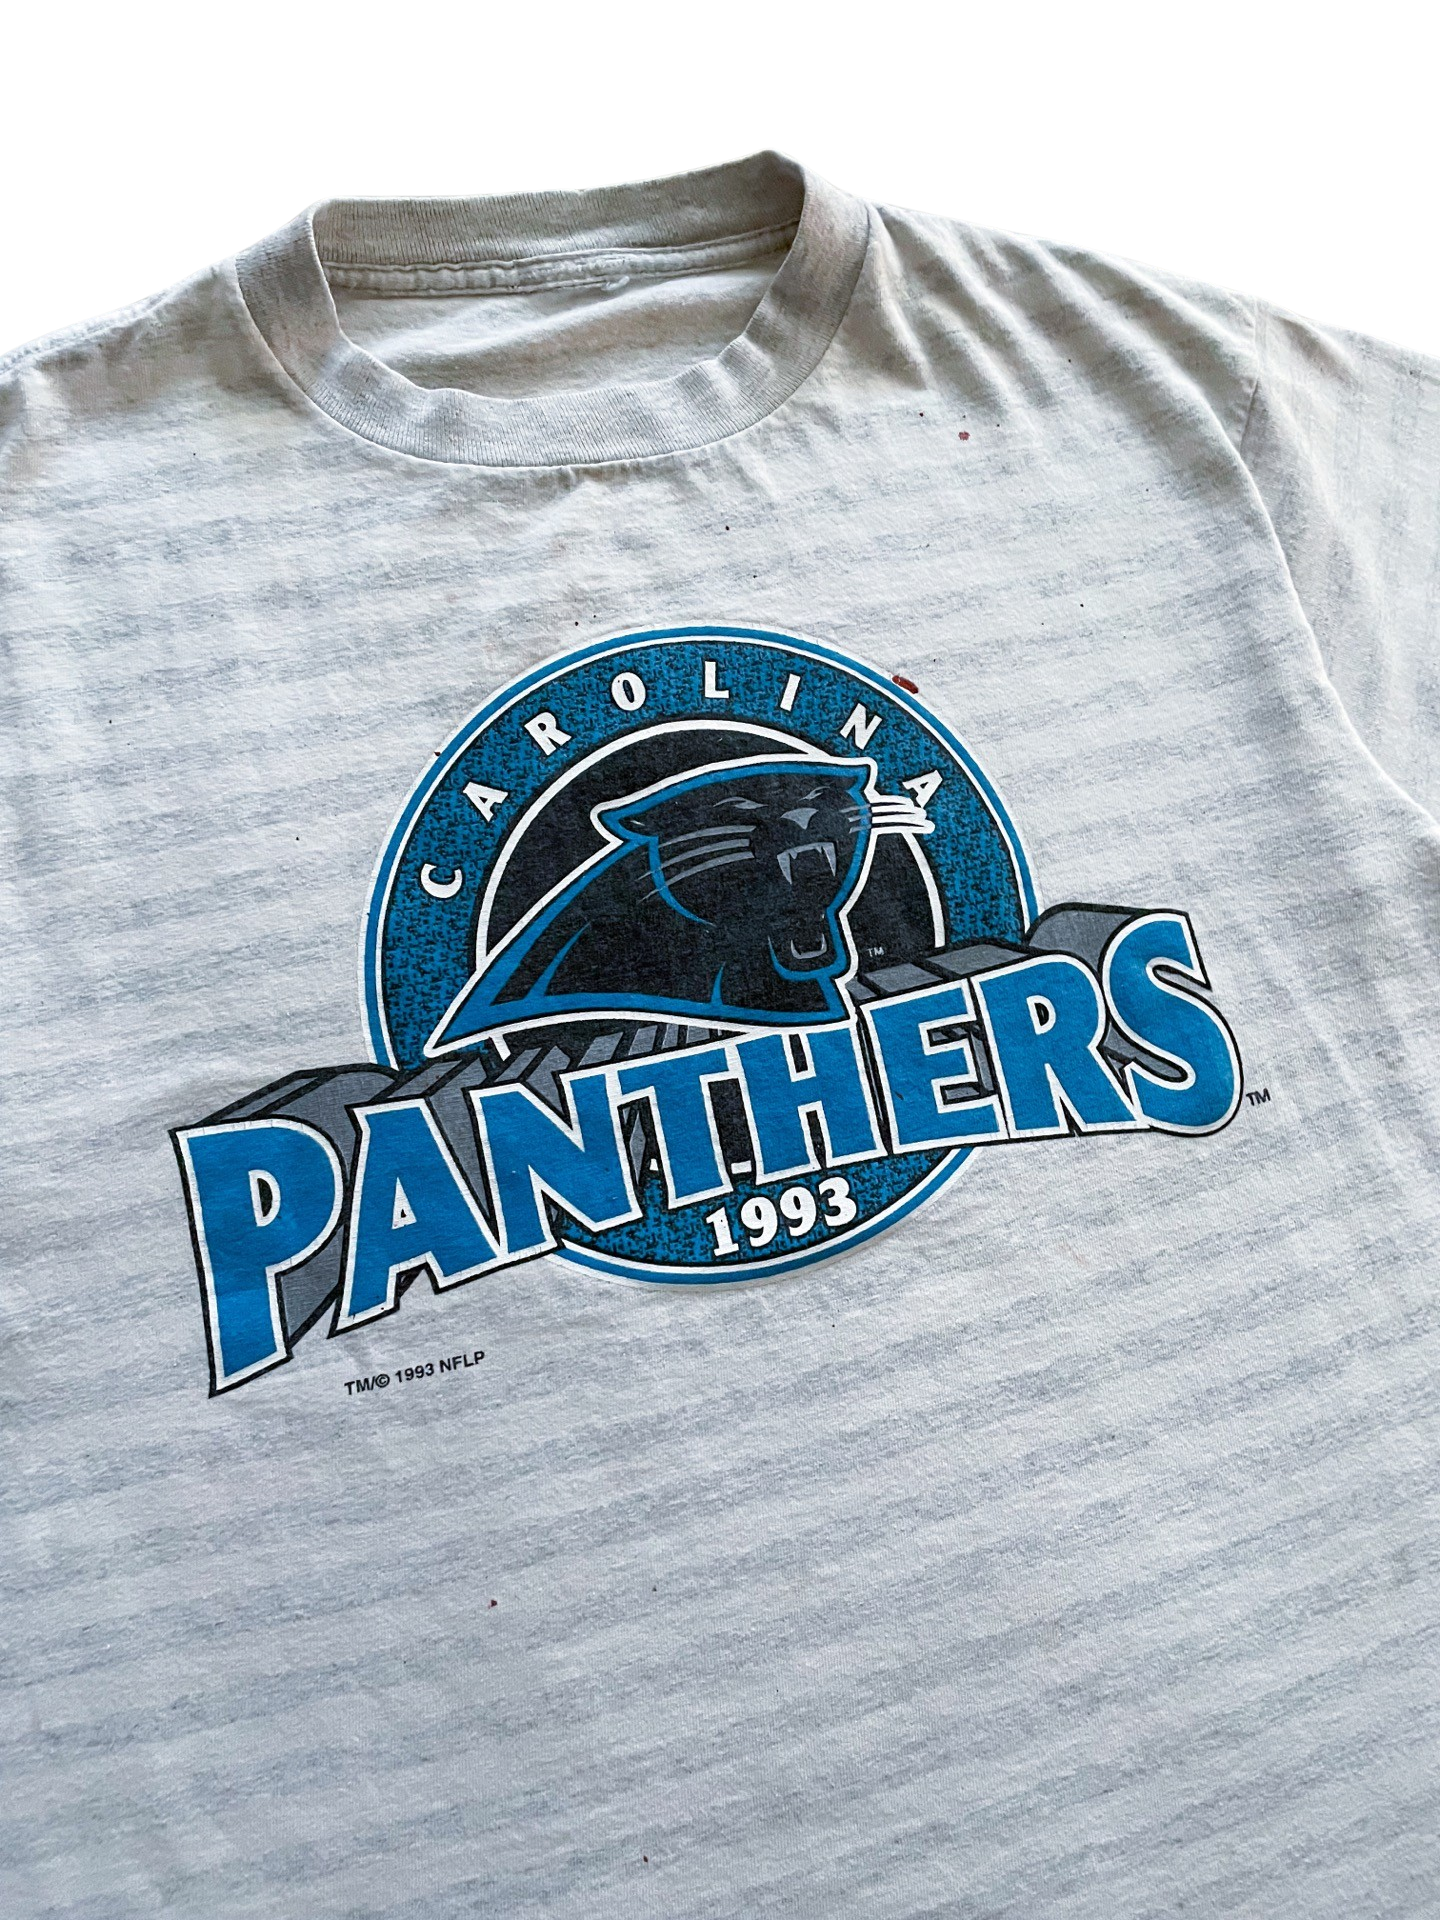 Vintage Carolina Panthers t-shirt